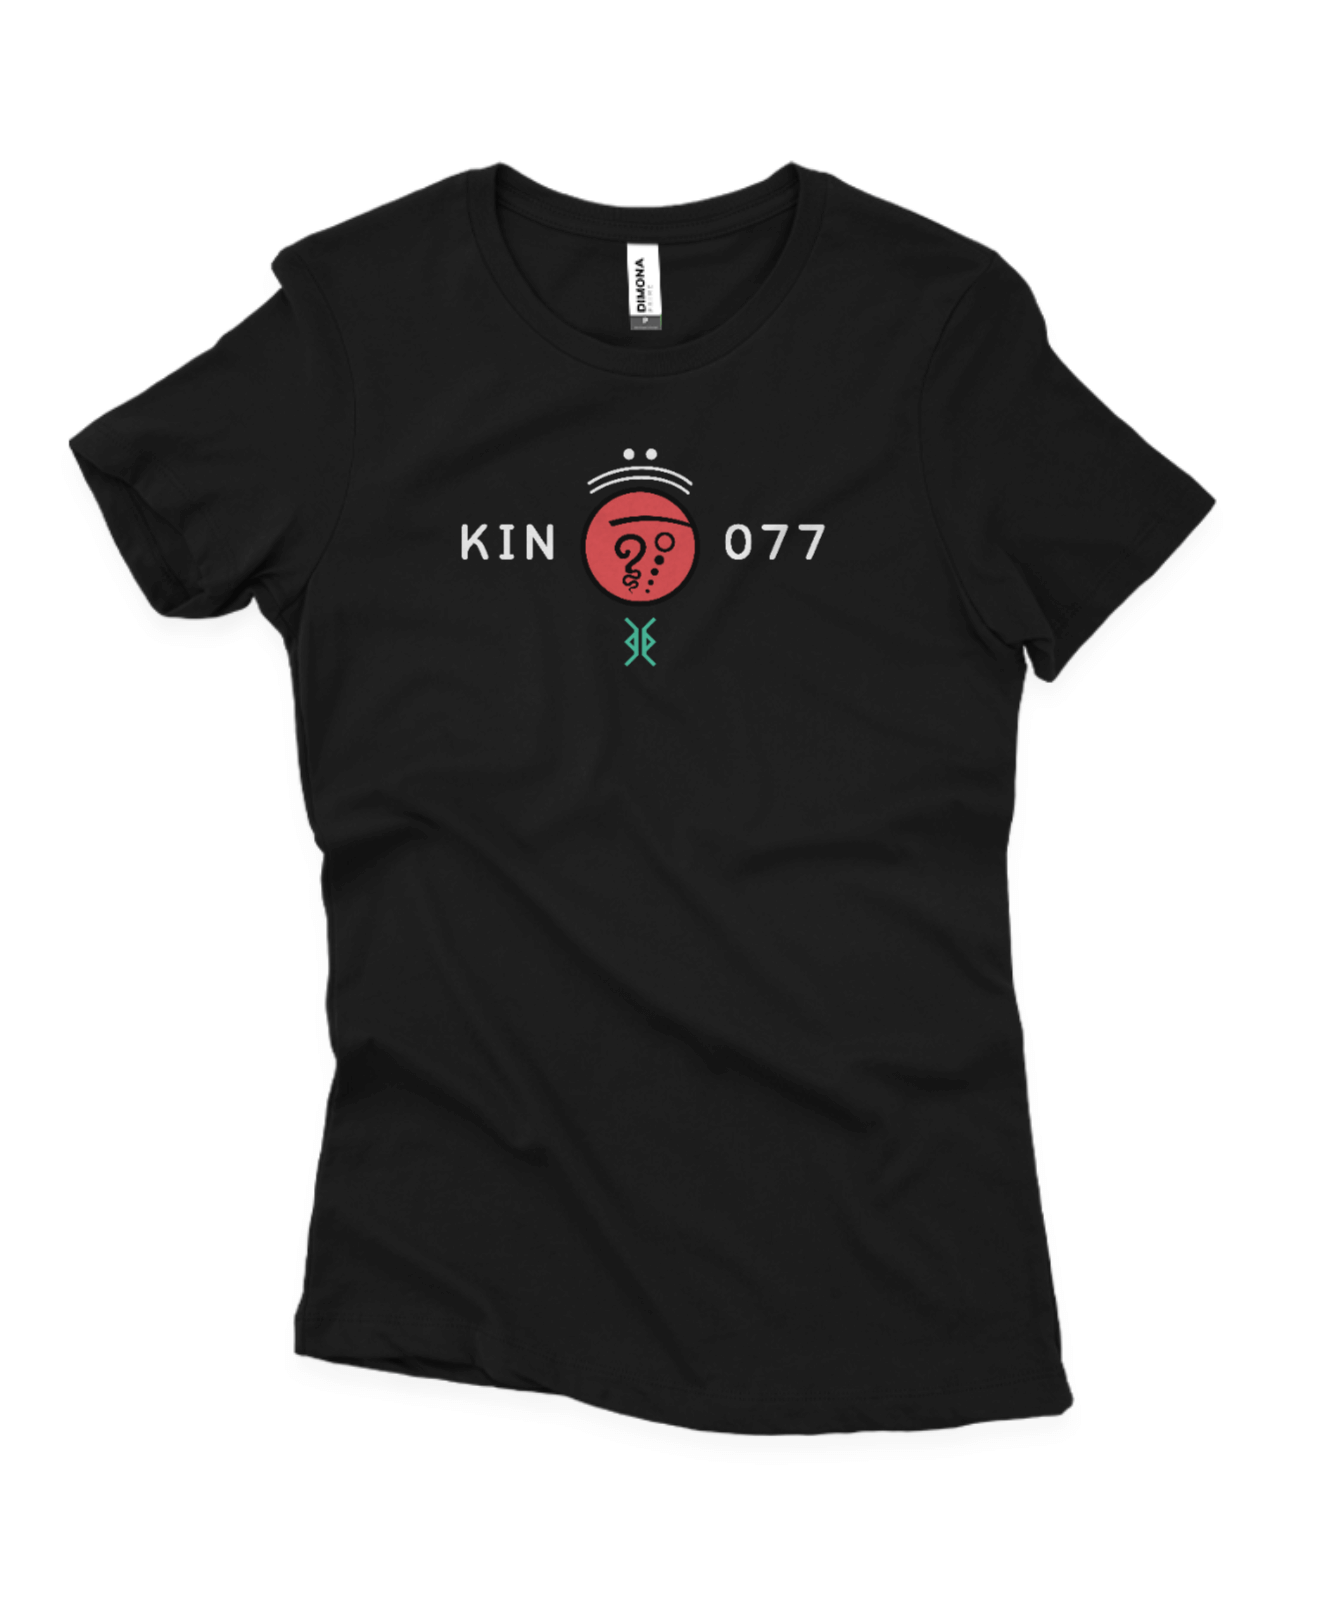 Camisa Feminina Preta Kin 077 - Terra Cristal Vermelha - Kin 77